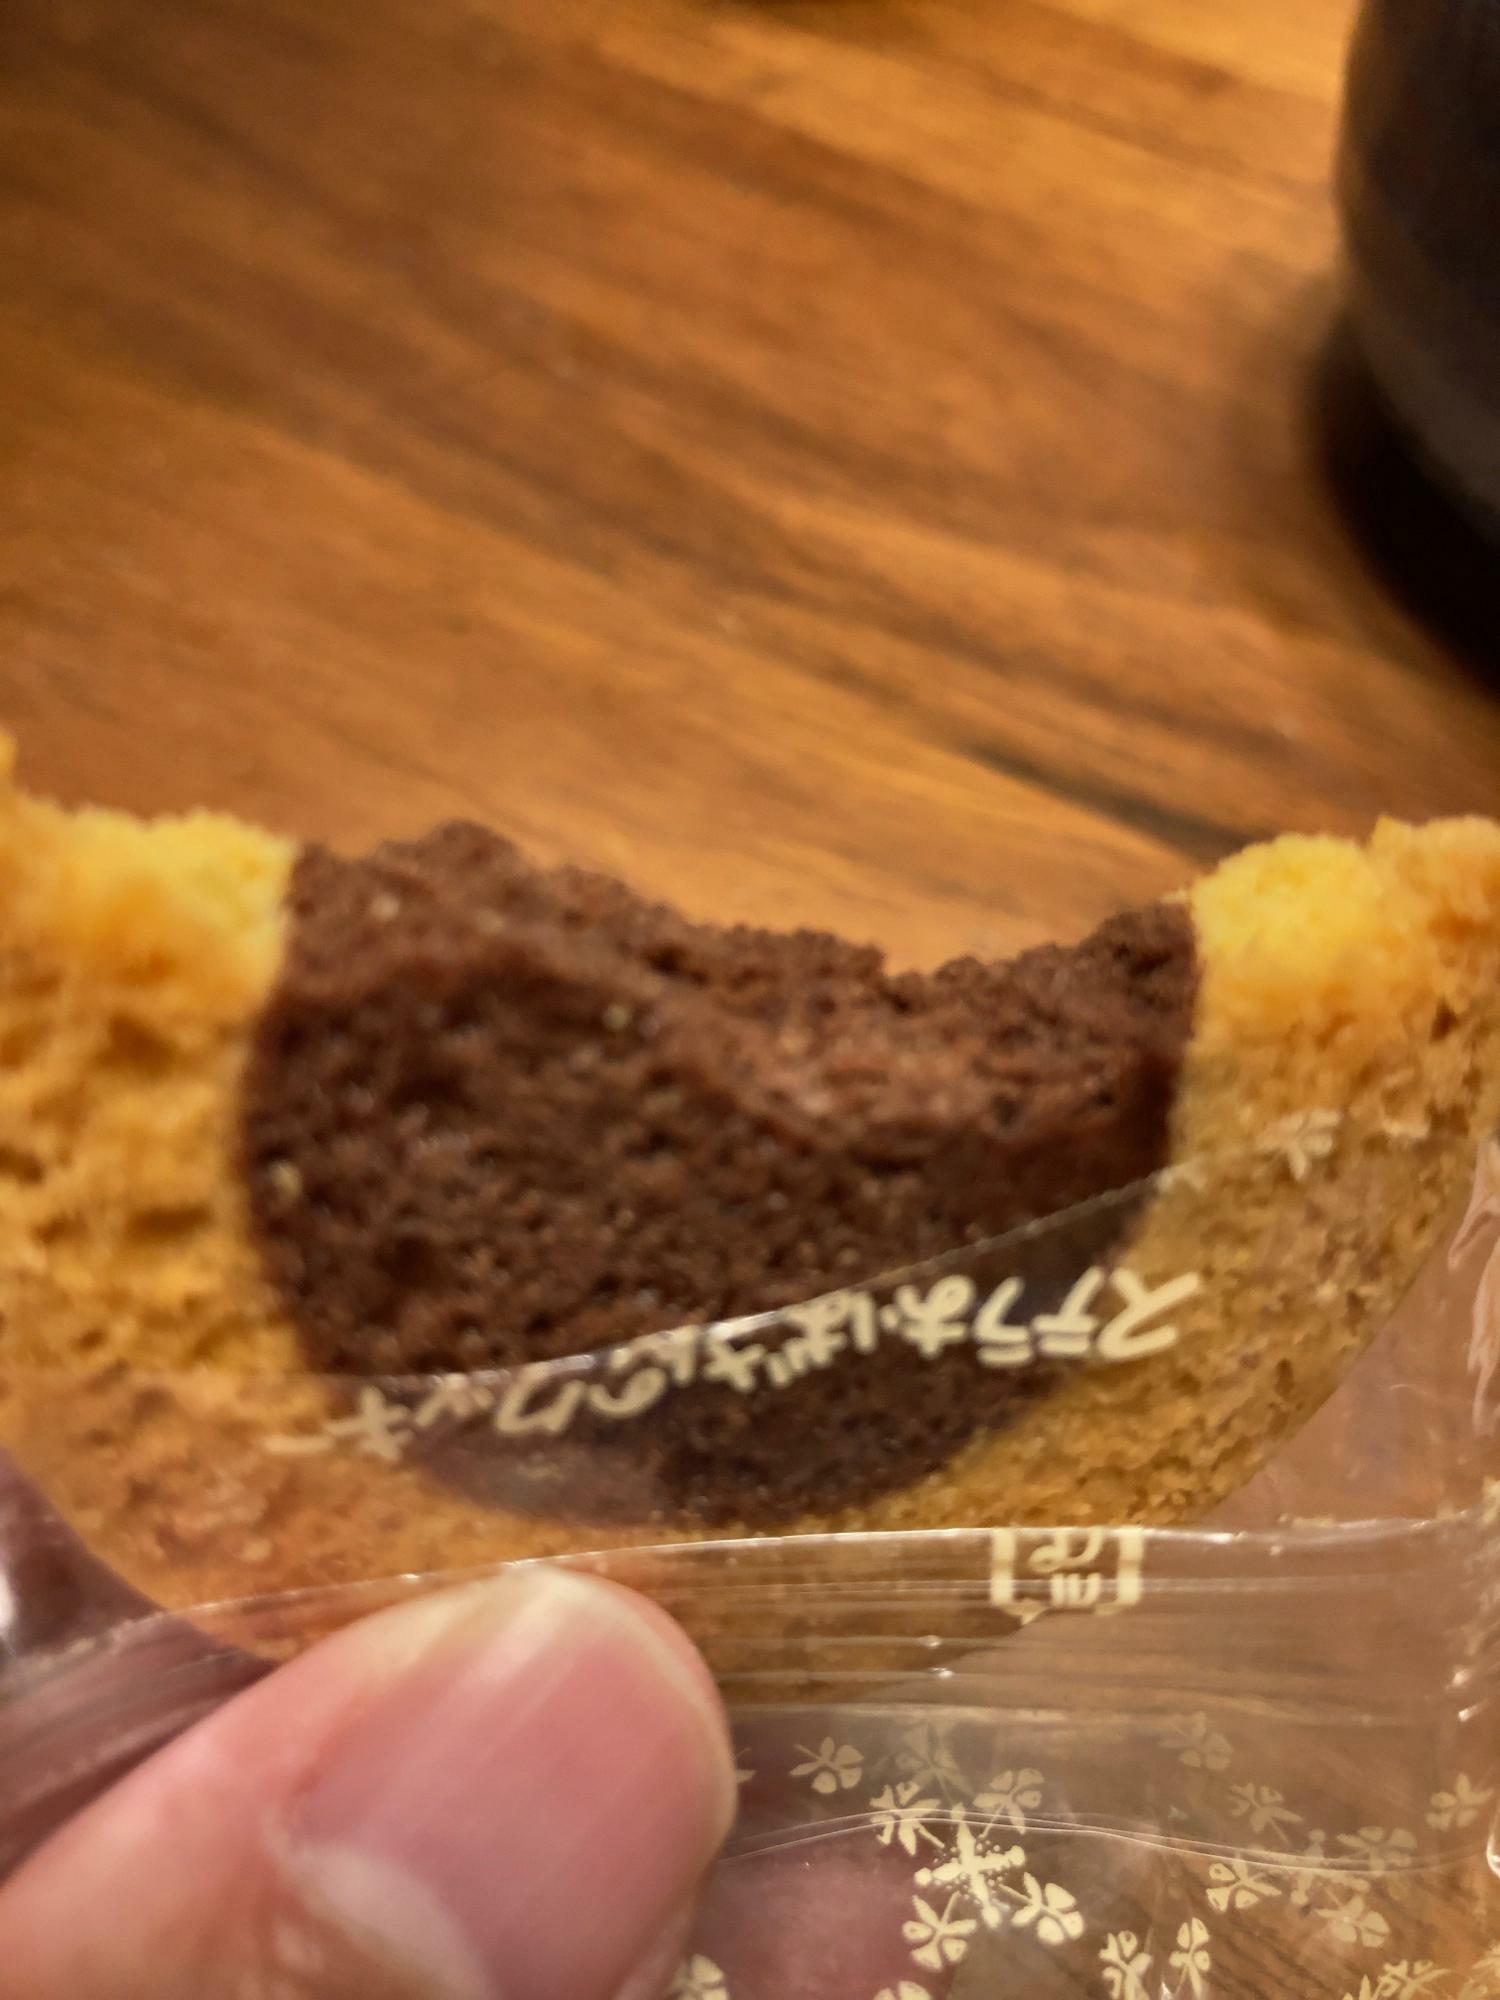 マロンチョコクッキーです。真ん中部分がマロンチョコです。